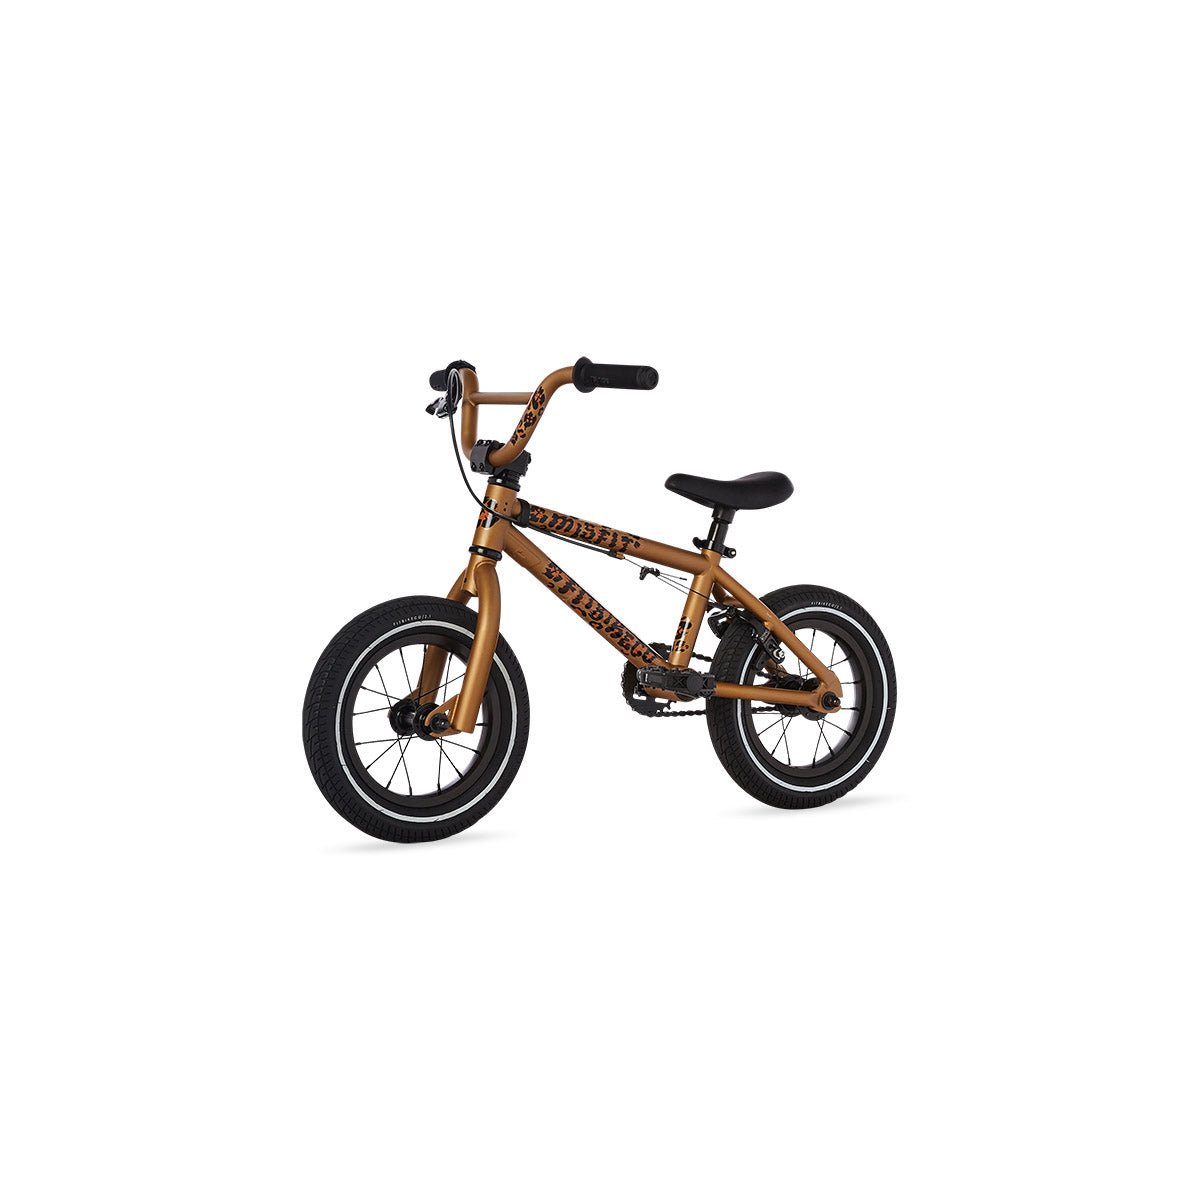 2023 Fit Misfit 12 BMX Bicycle - Cheetah - Alaska Bicycle Center